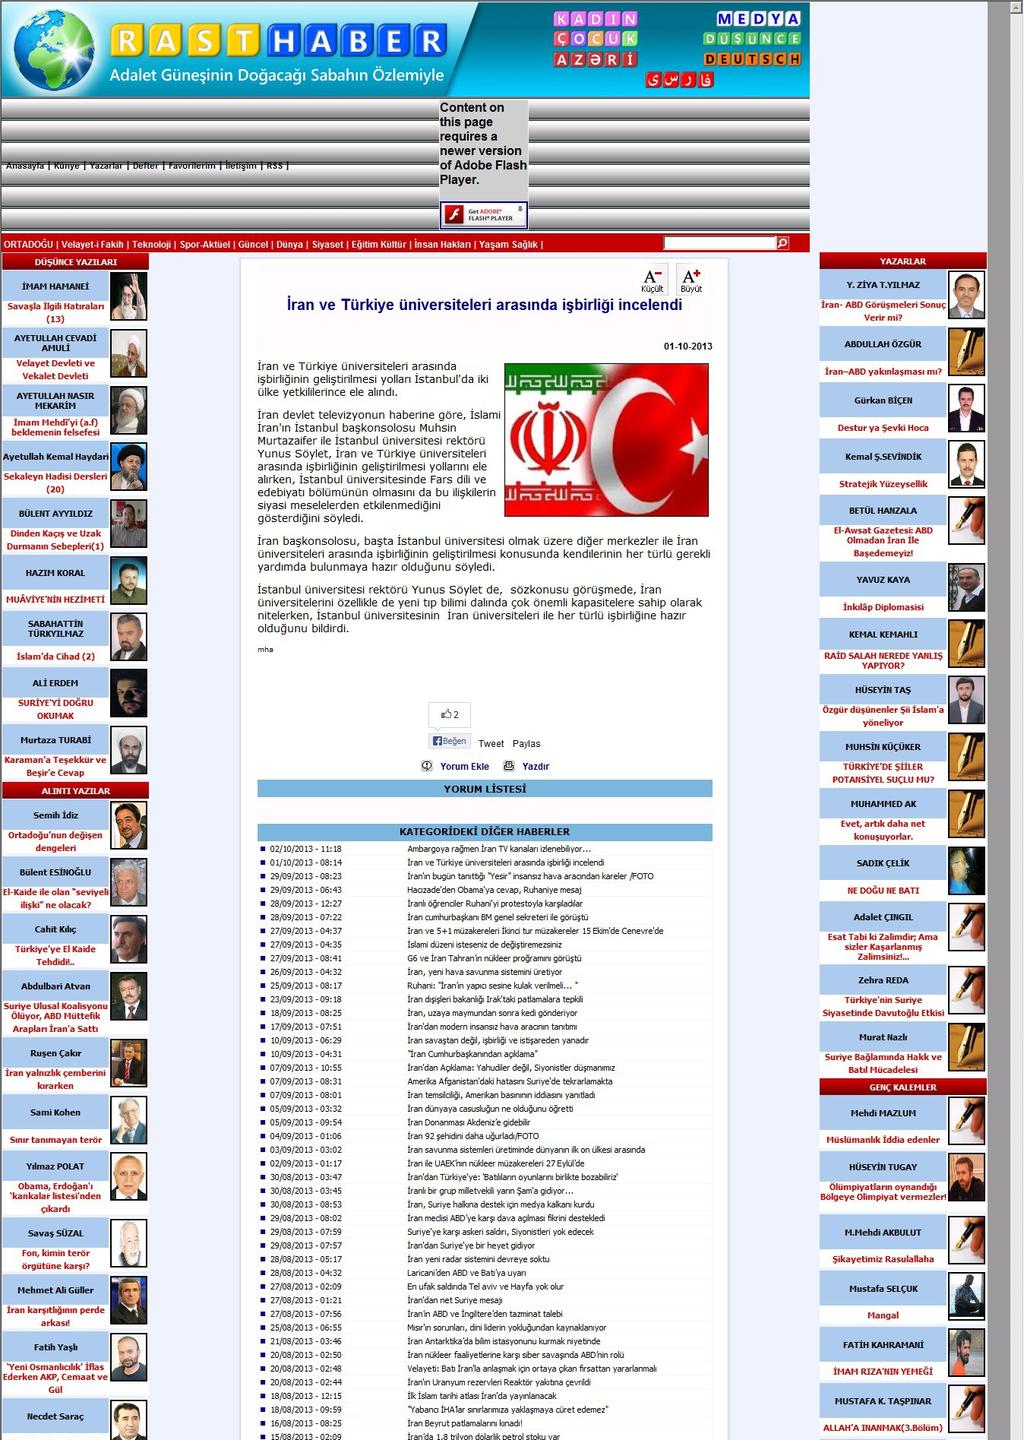 IRAN VE TÜRKIYE ÜNIVERSITELERI ARASINDA ISBIRLIGI INCELENDI Portal Adres : www.rasthaber.